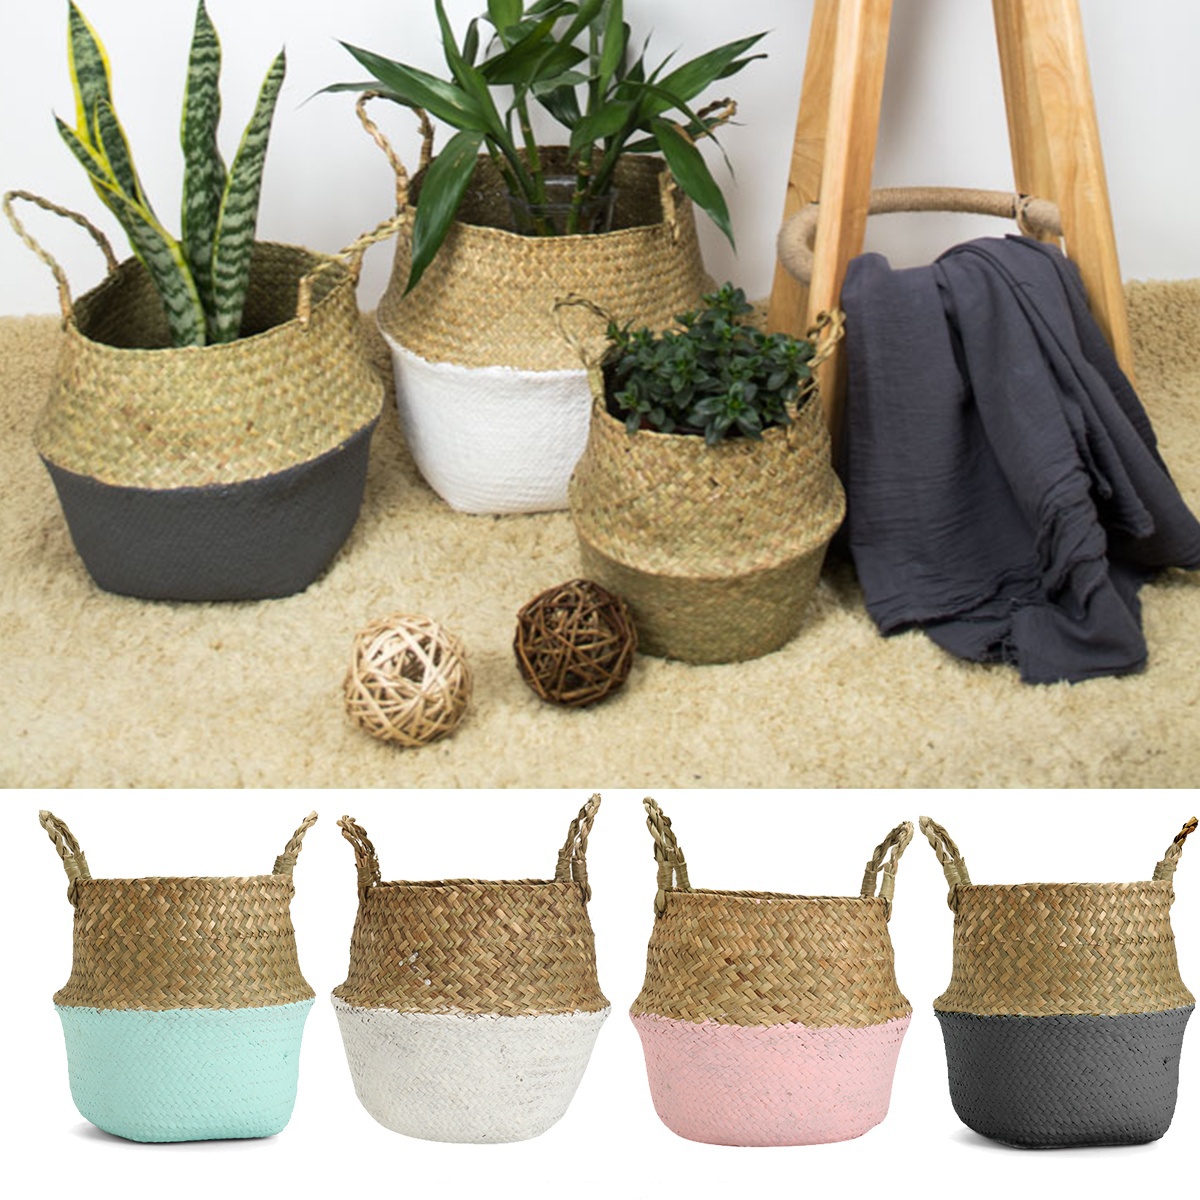 Foldable-Rattan-Straw-Basket-Flower-Pot-Hanging-Wicker-Storage-Baskets-Garden-Accessories-1217819-1